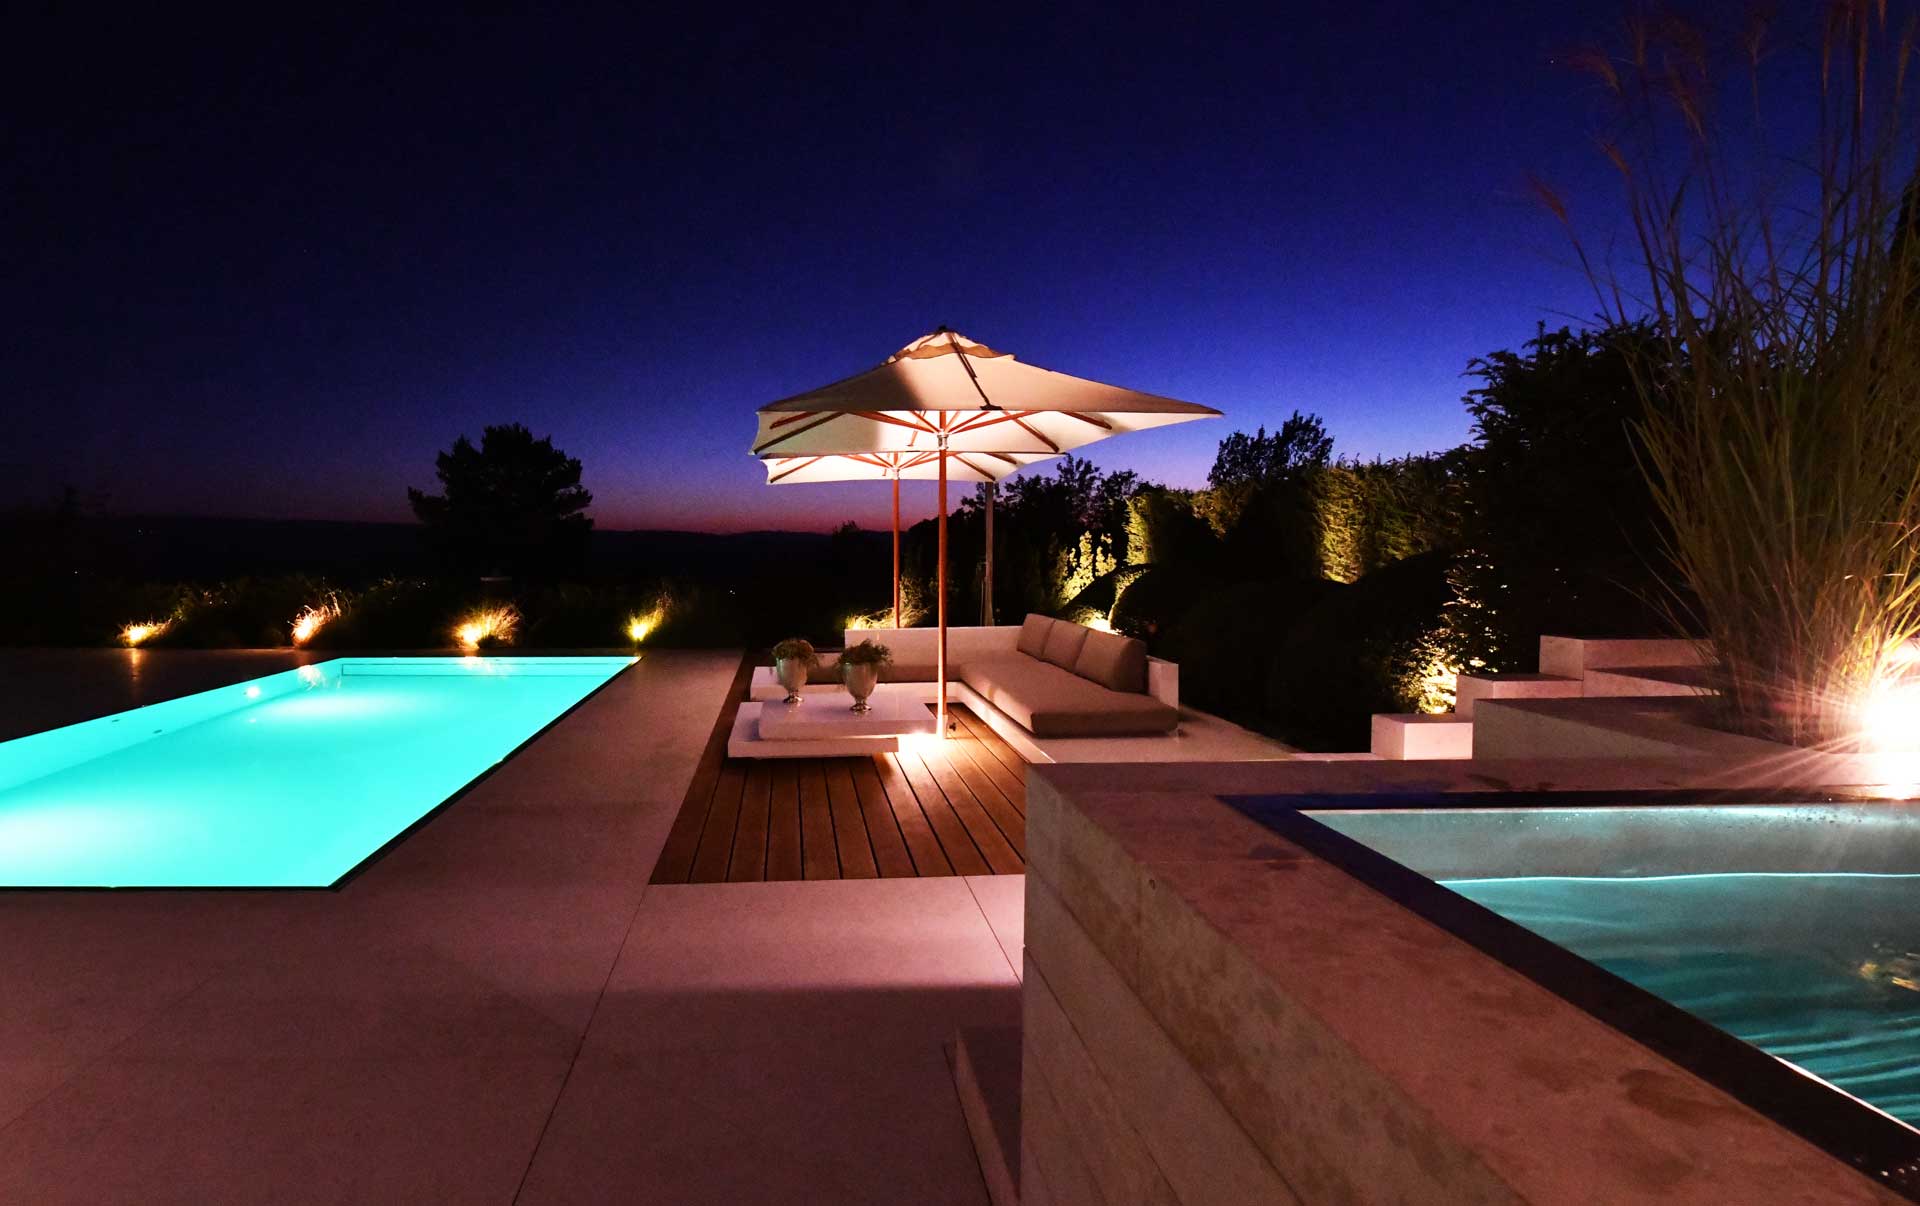 Mit Megaspot Pool beleuchteter Pool, auf einer Terrasse mit Sitzecke zum entspannen